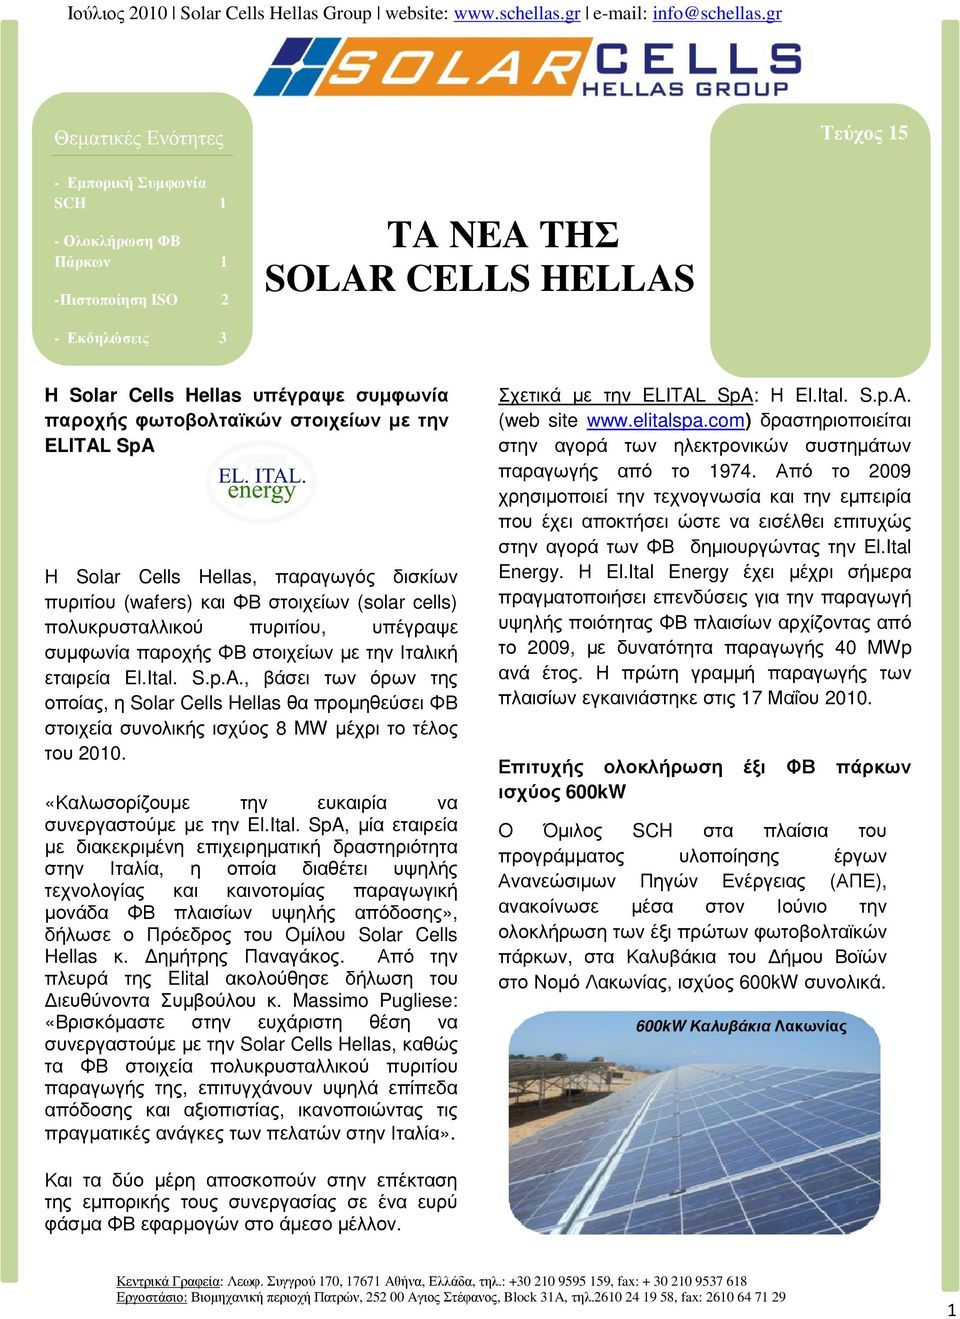 την Ιταλική εταιρεία El.Ital. S.p.A., βάσει των όρων της οποίας, η Solar Cells Hellas θα προµηθεύσει ΦΒ στοιχεία συνολικής ισχύος 8 MW µέχρι το τέλος του 2010.